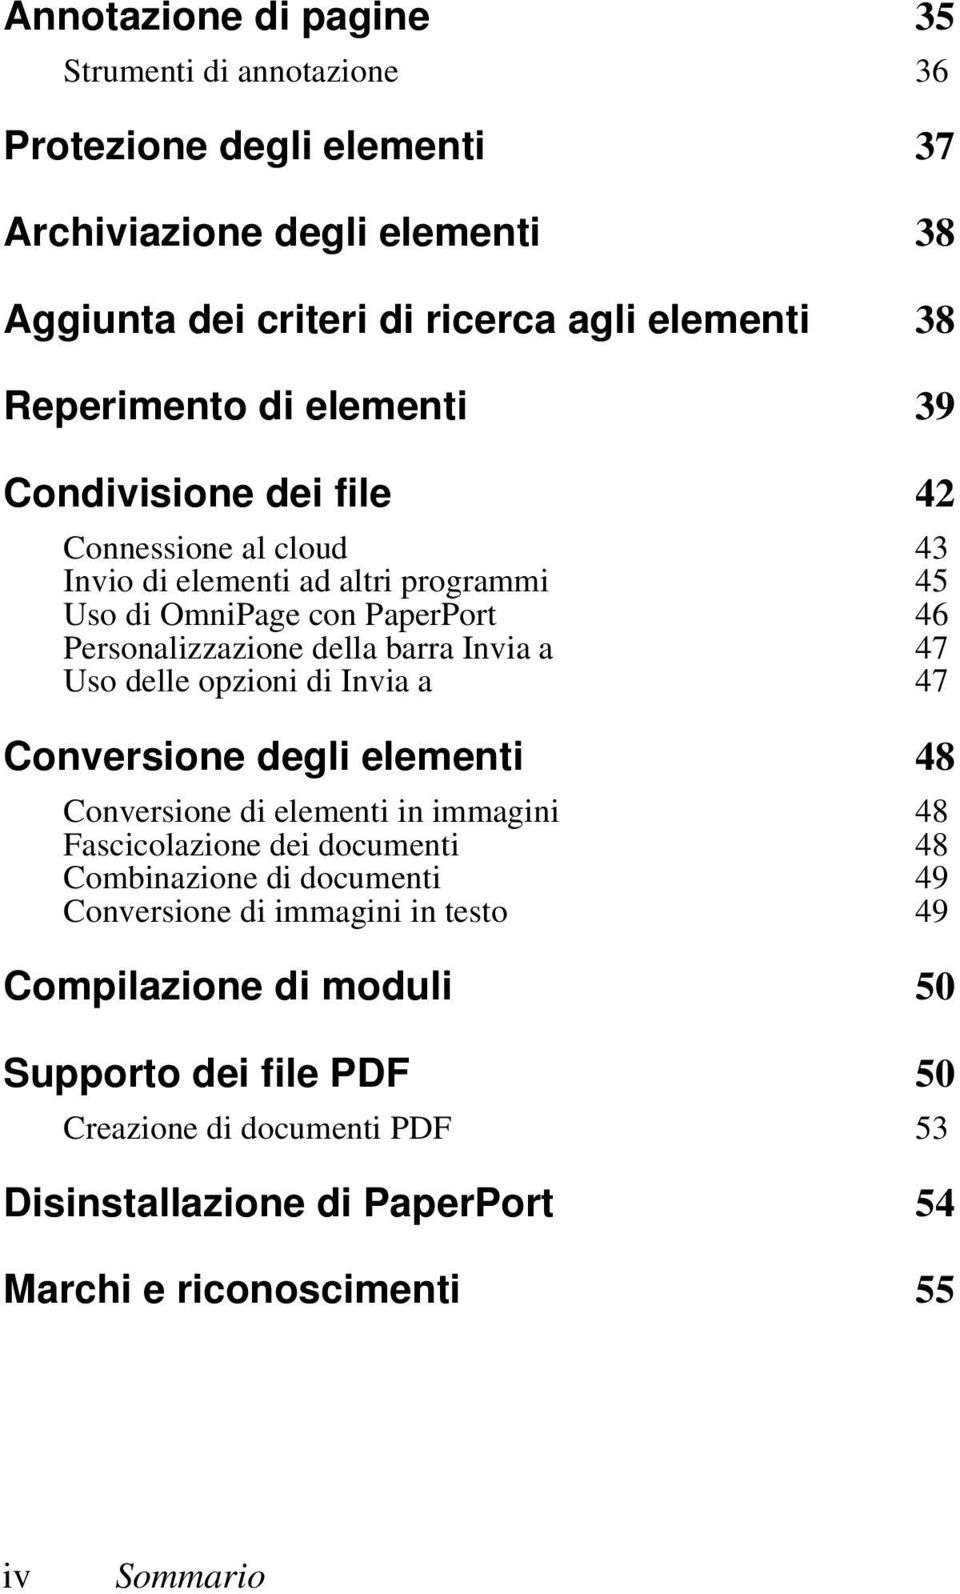 47 Uso delle opzioni di Invia a 47 Conversione degli elementi 48 Conversione di elementi in immagini 48 Fascicolazione dei documenti 48 Combinazione di documenti 49